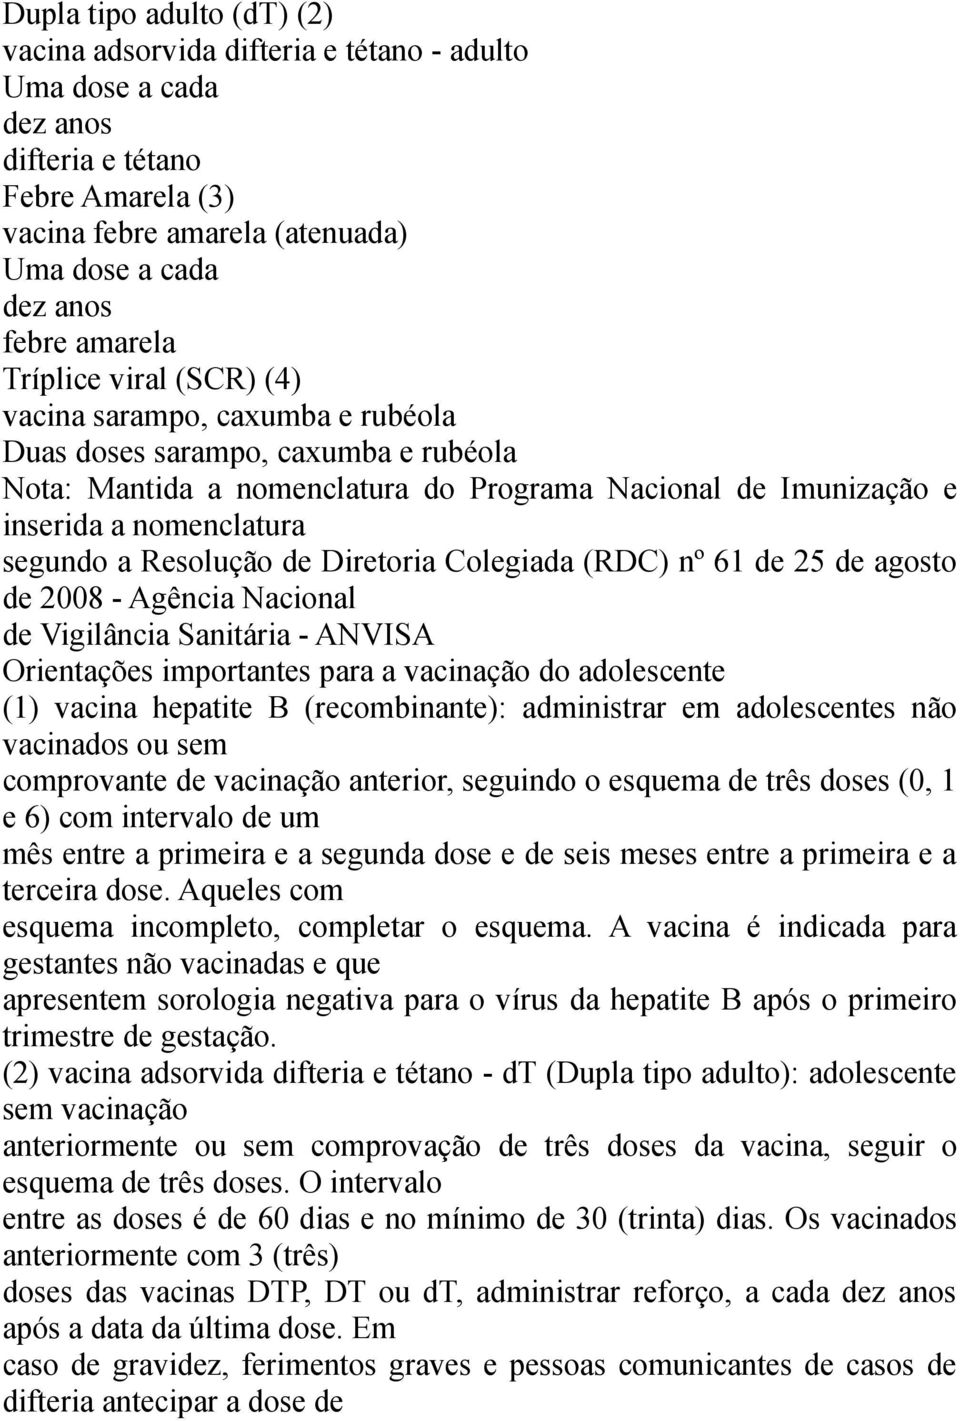 segundo a Resolução de Diretoria Colegiada (RDC) nº 61 de 25 de agosto de 2008 - Agência Nacional de Vigilância Sanitária - ANVISA Orientações importantes para a vacinação do adolescente (1) vacina